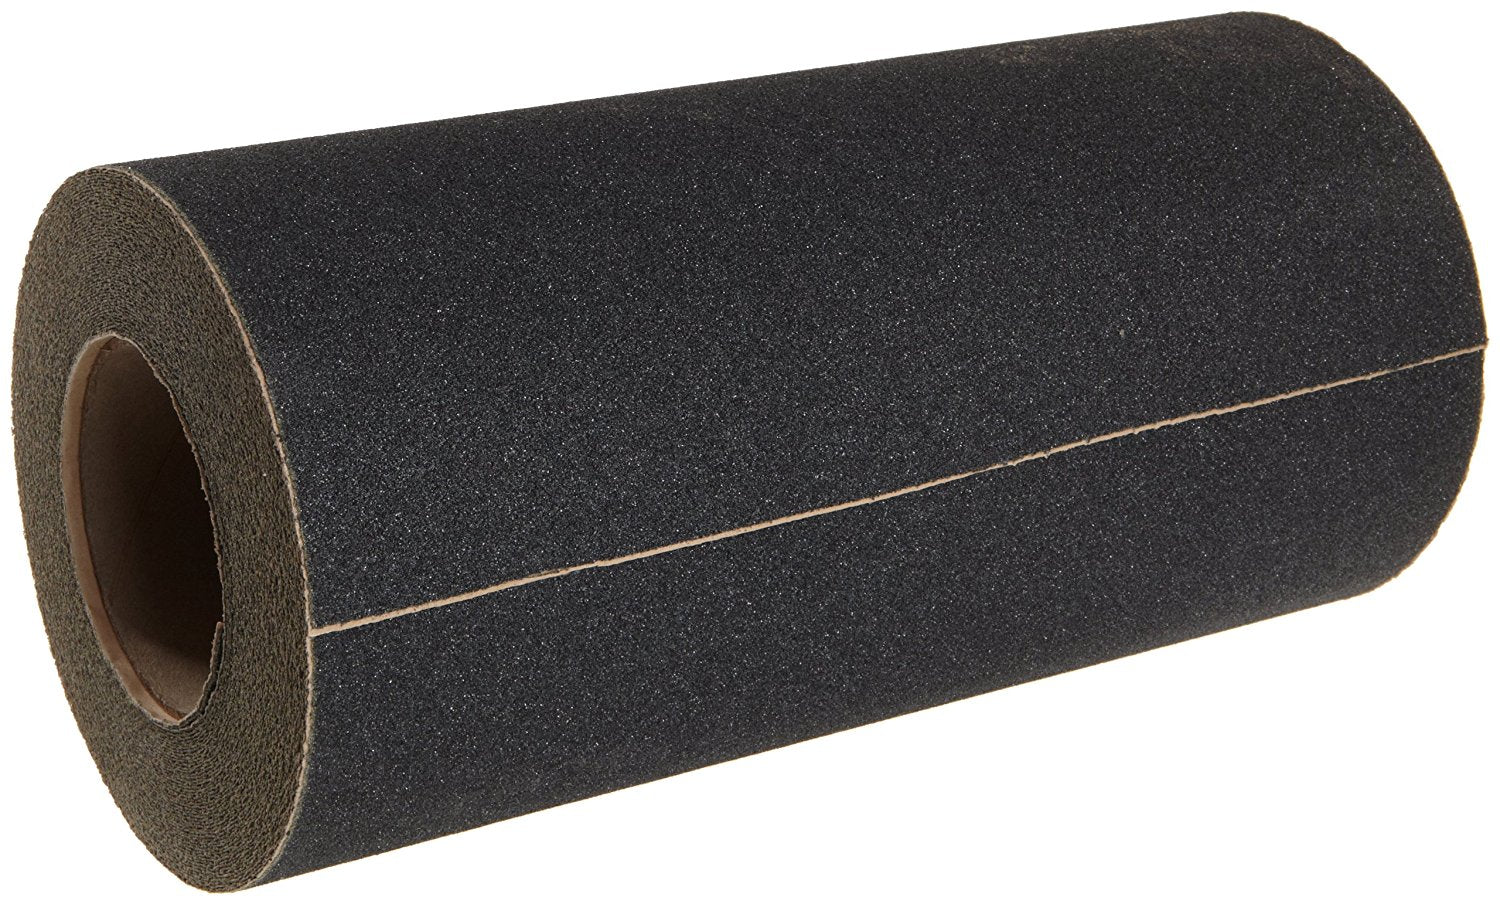 12" X 10' Roll BLACK Abrasive 80 Grit NON-SLIP Tape